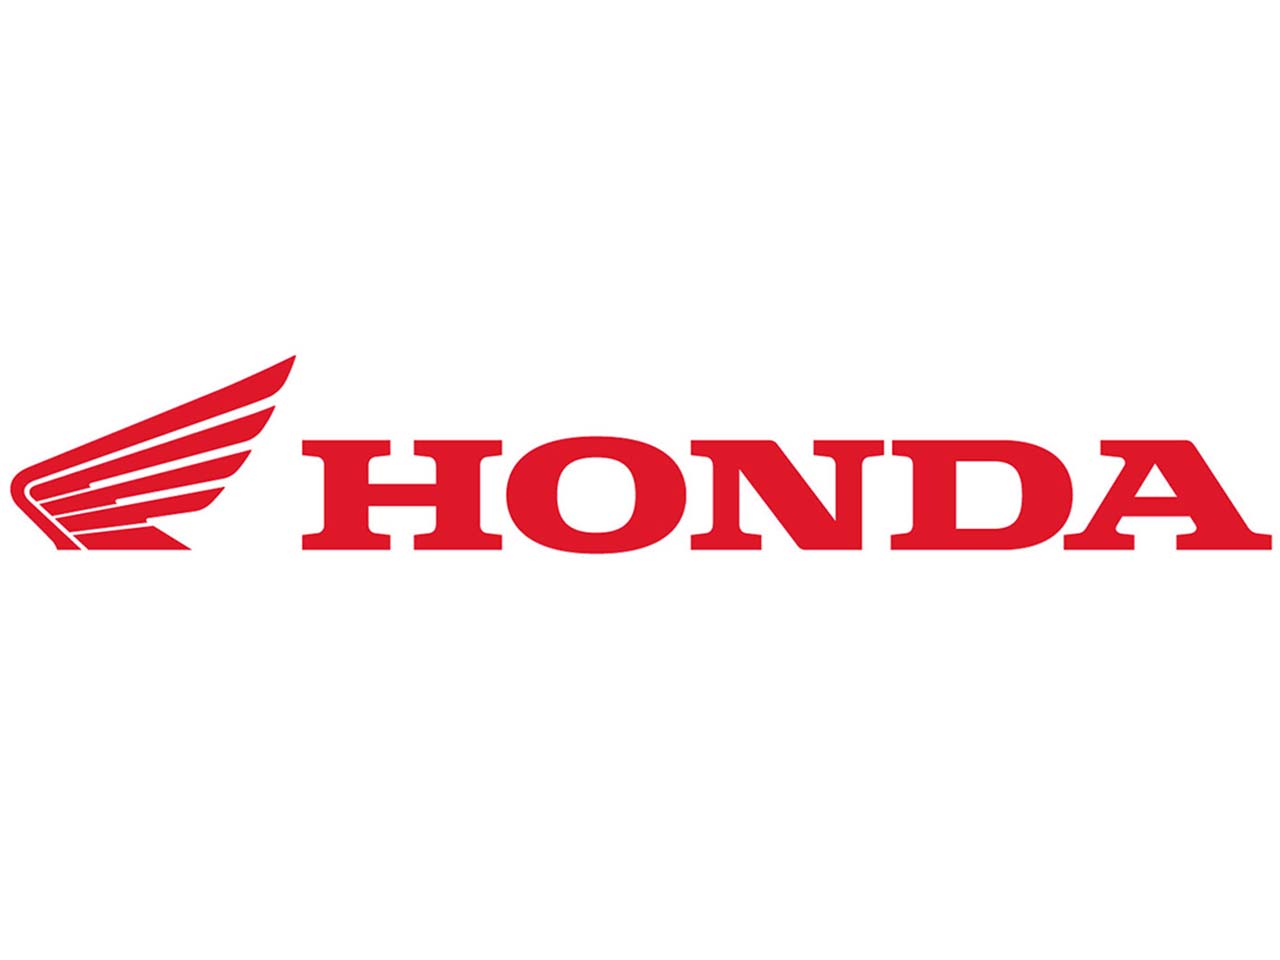 Honda silver logo vector